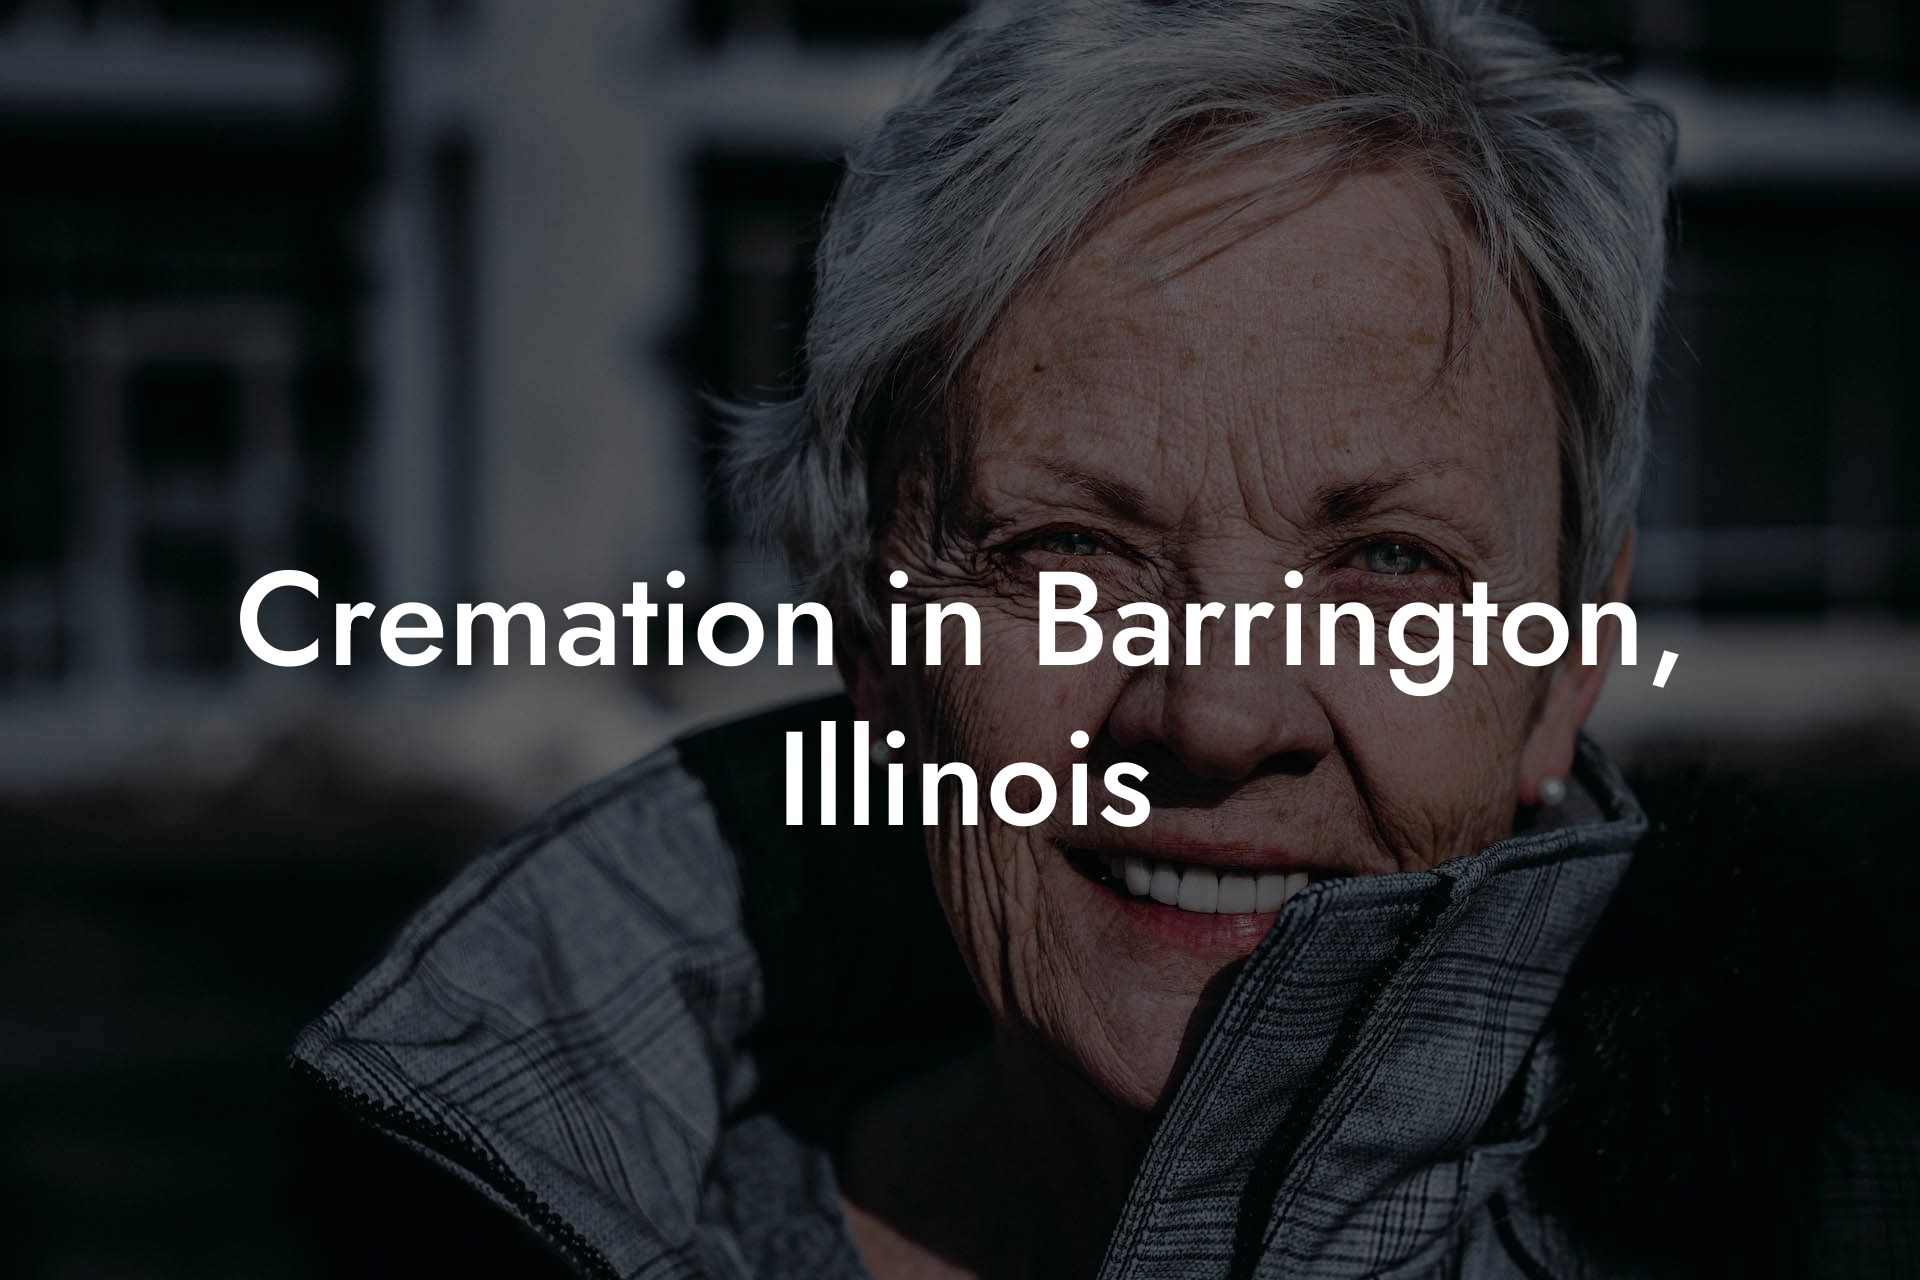 Cremation in Barrington, Illinois